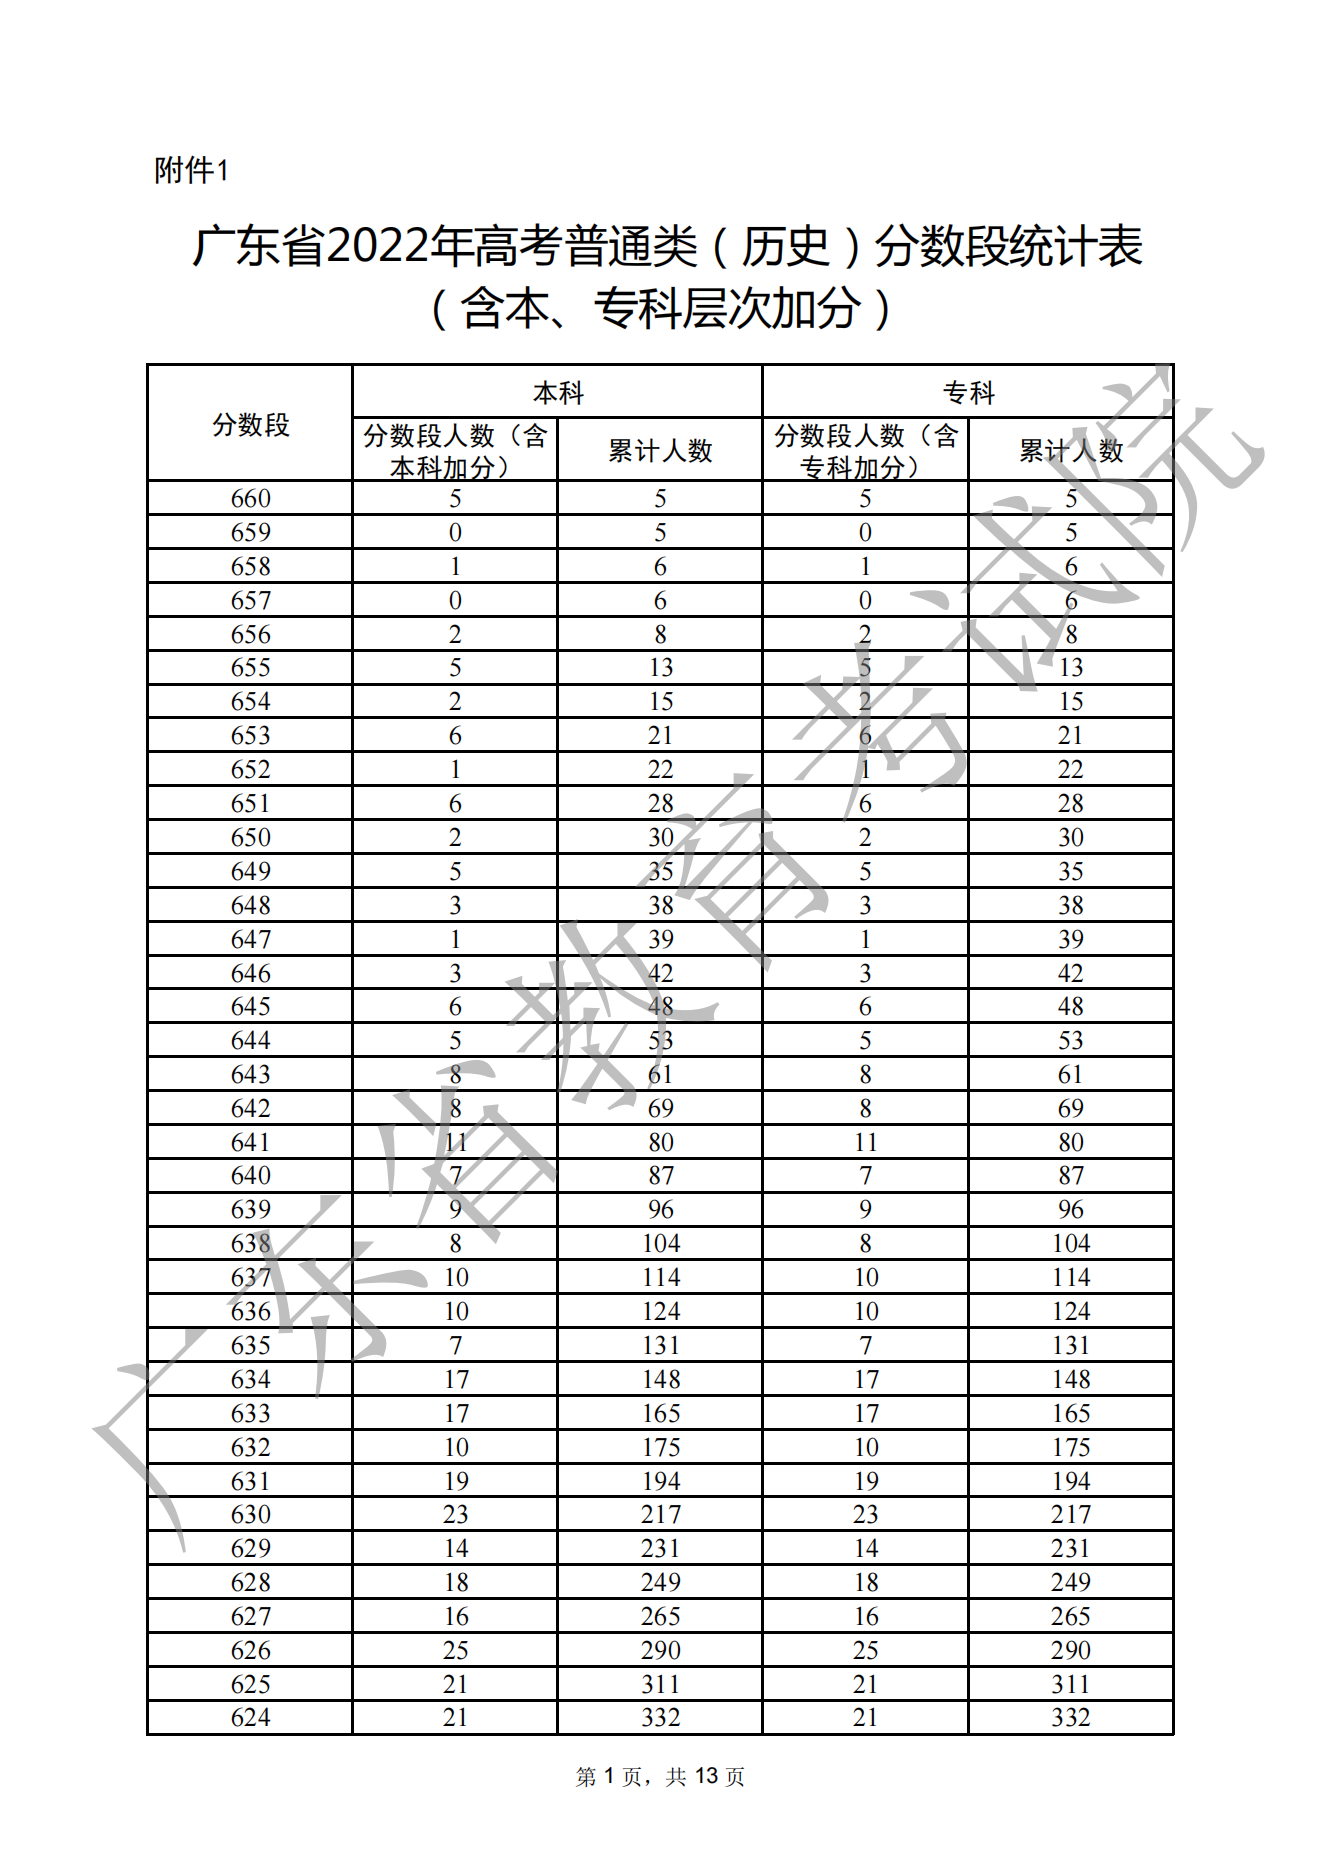 2022年广东高考一分一段表出炉